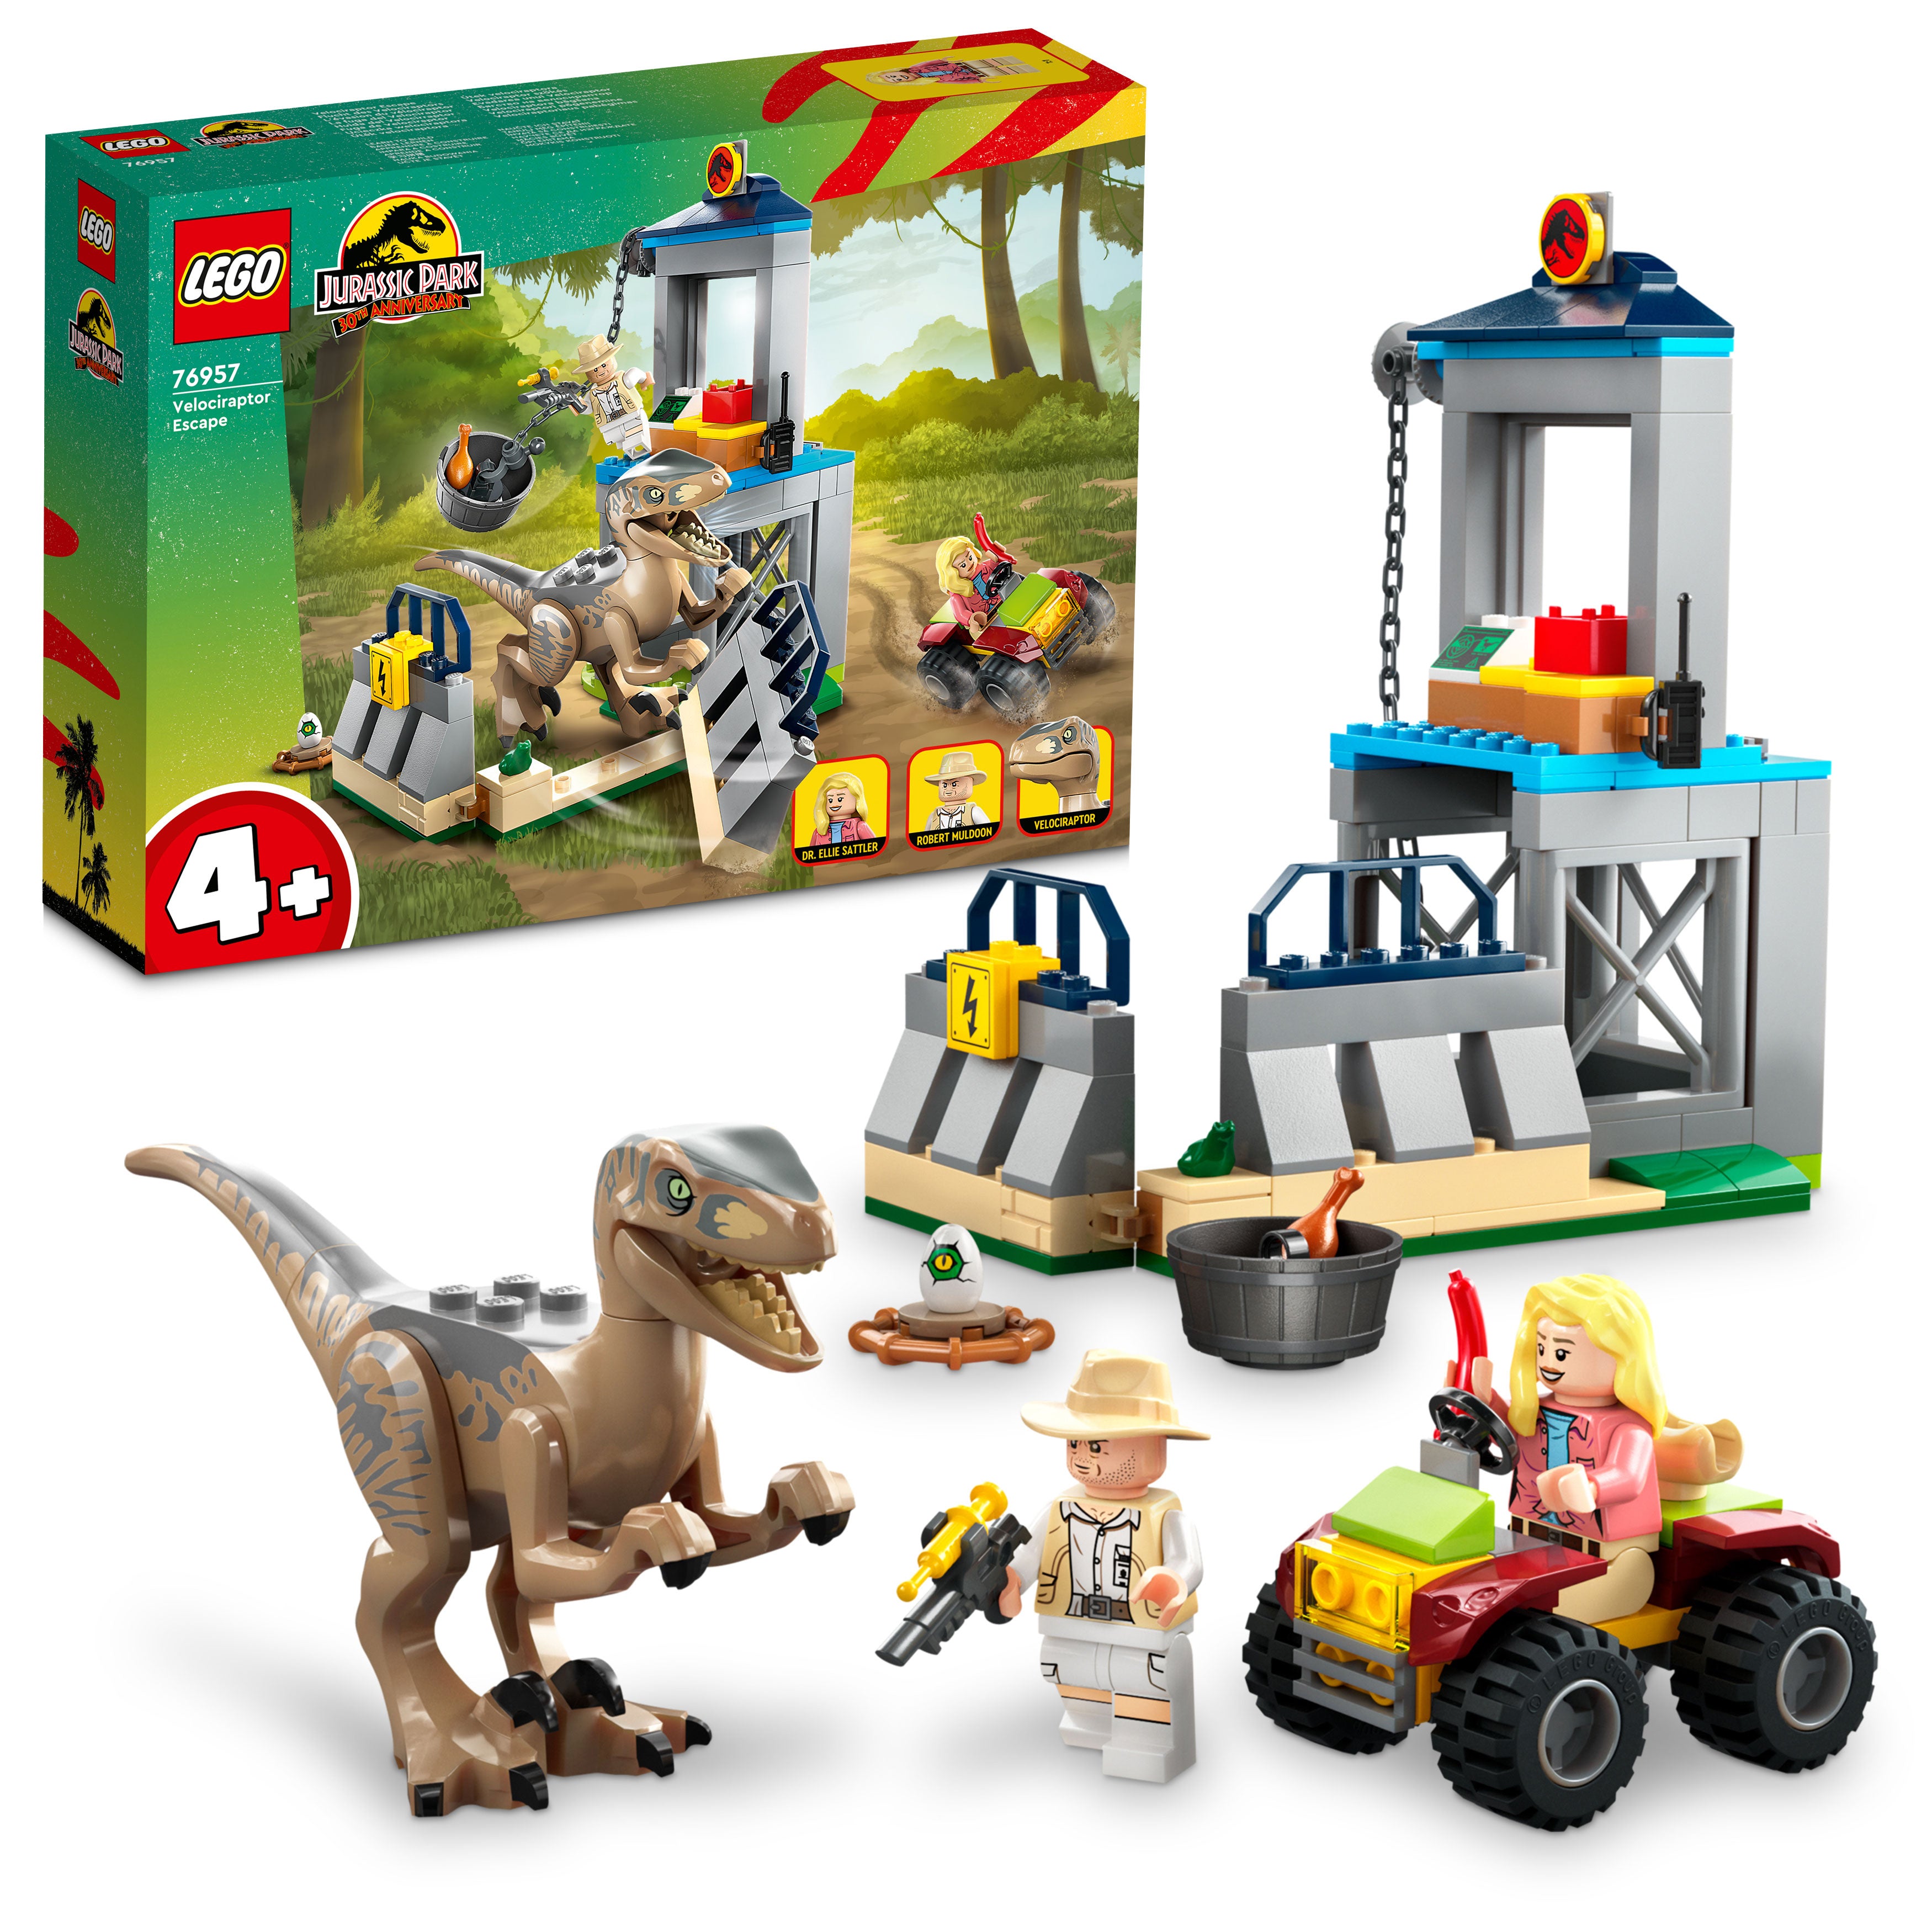 Lego 76957 Velociraptor Escape